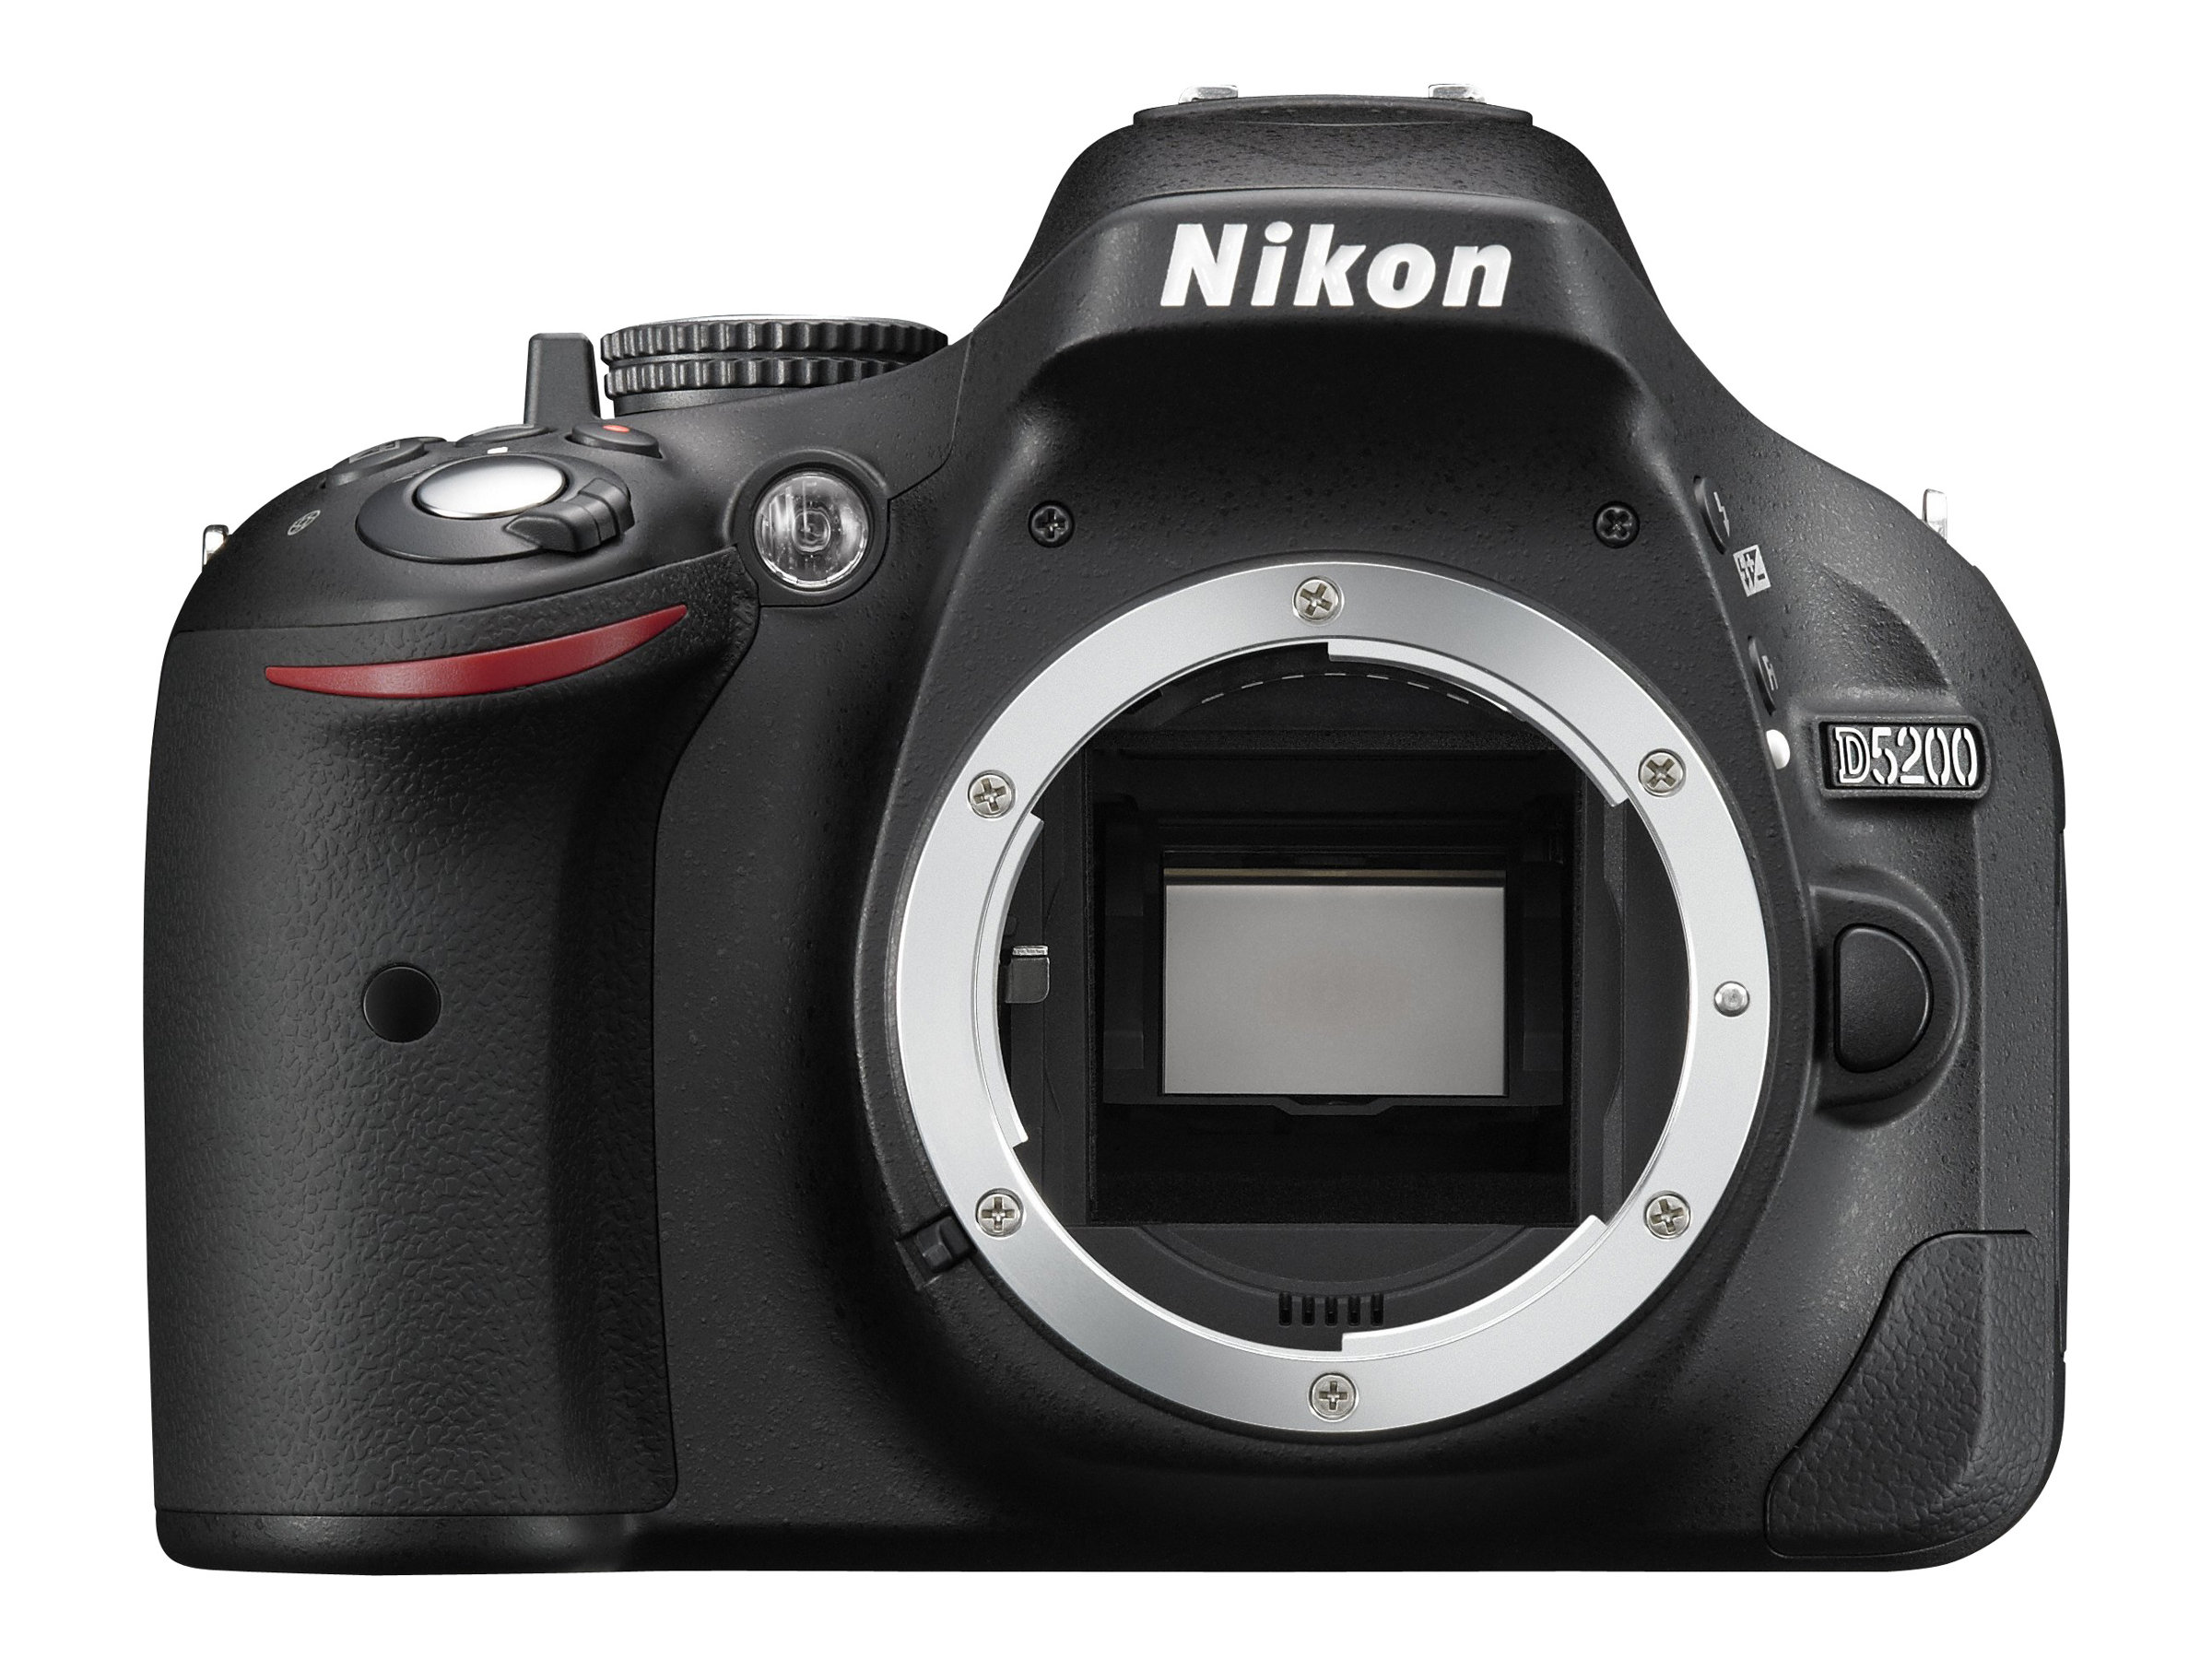 Nikon D5200/D5600 DSLR Camera with Nikon 18-140mm VR DX Lens - image 1 of 5